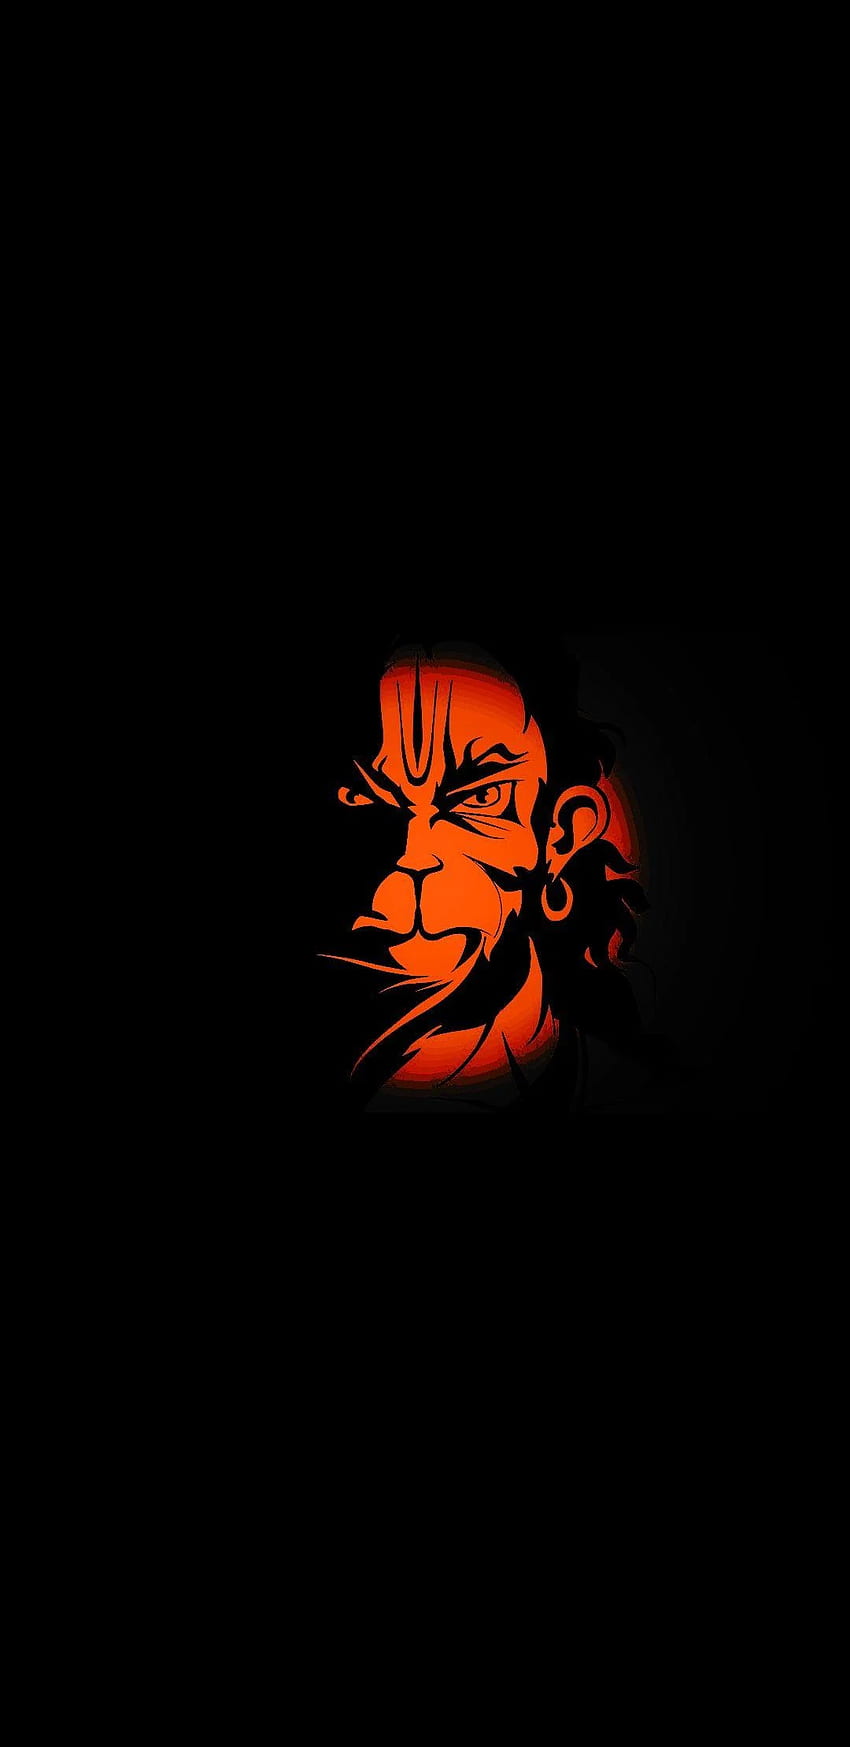 Ponsel Hanuman Amoled, Wajah Hanuman wallpaper ponsel HD